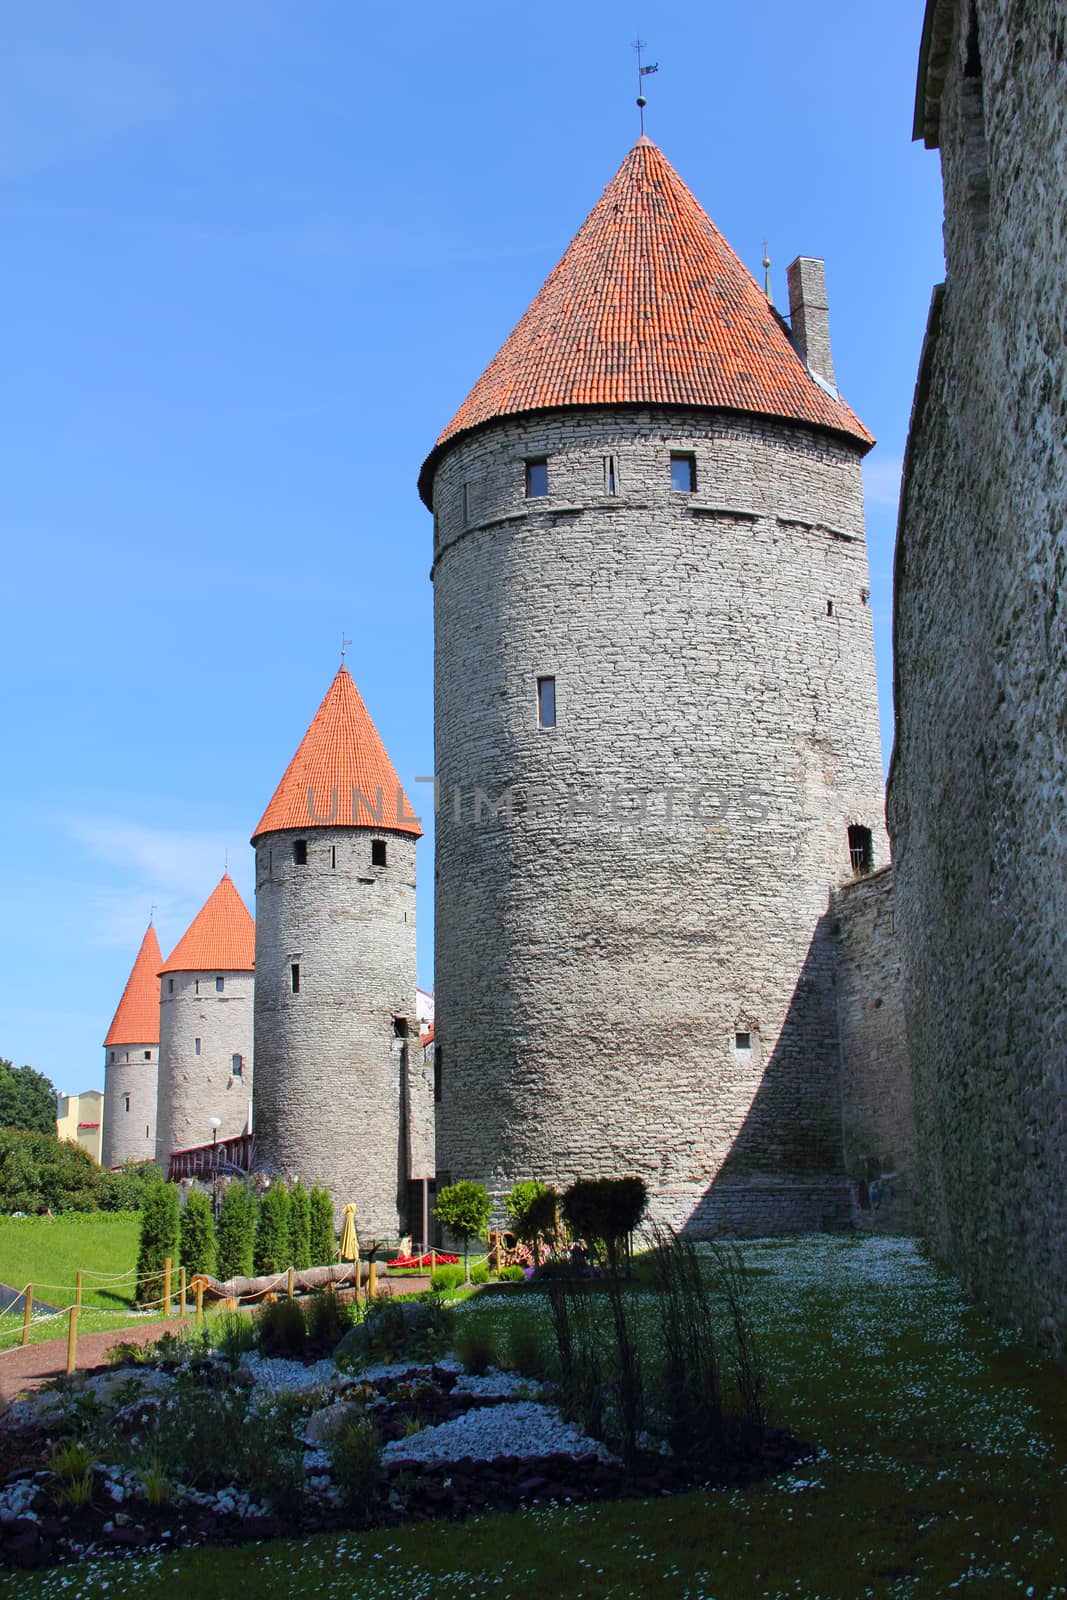 Castle towers in Tallinn, Estonia by destillat